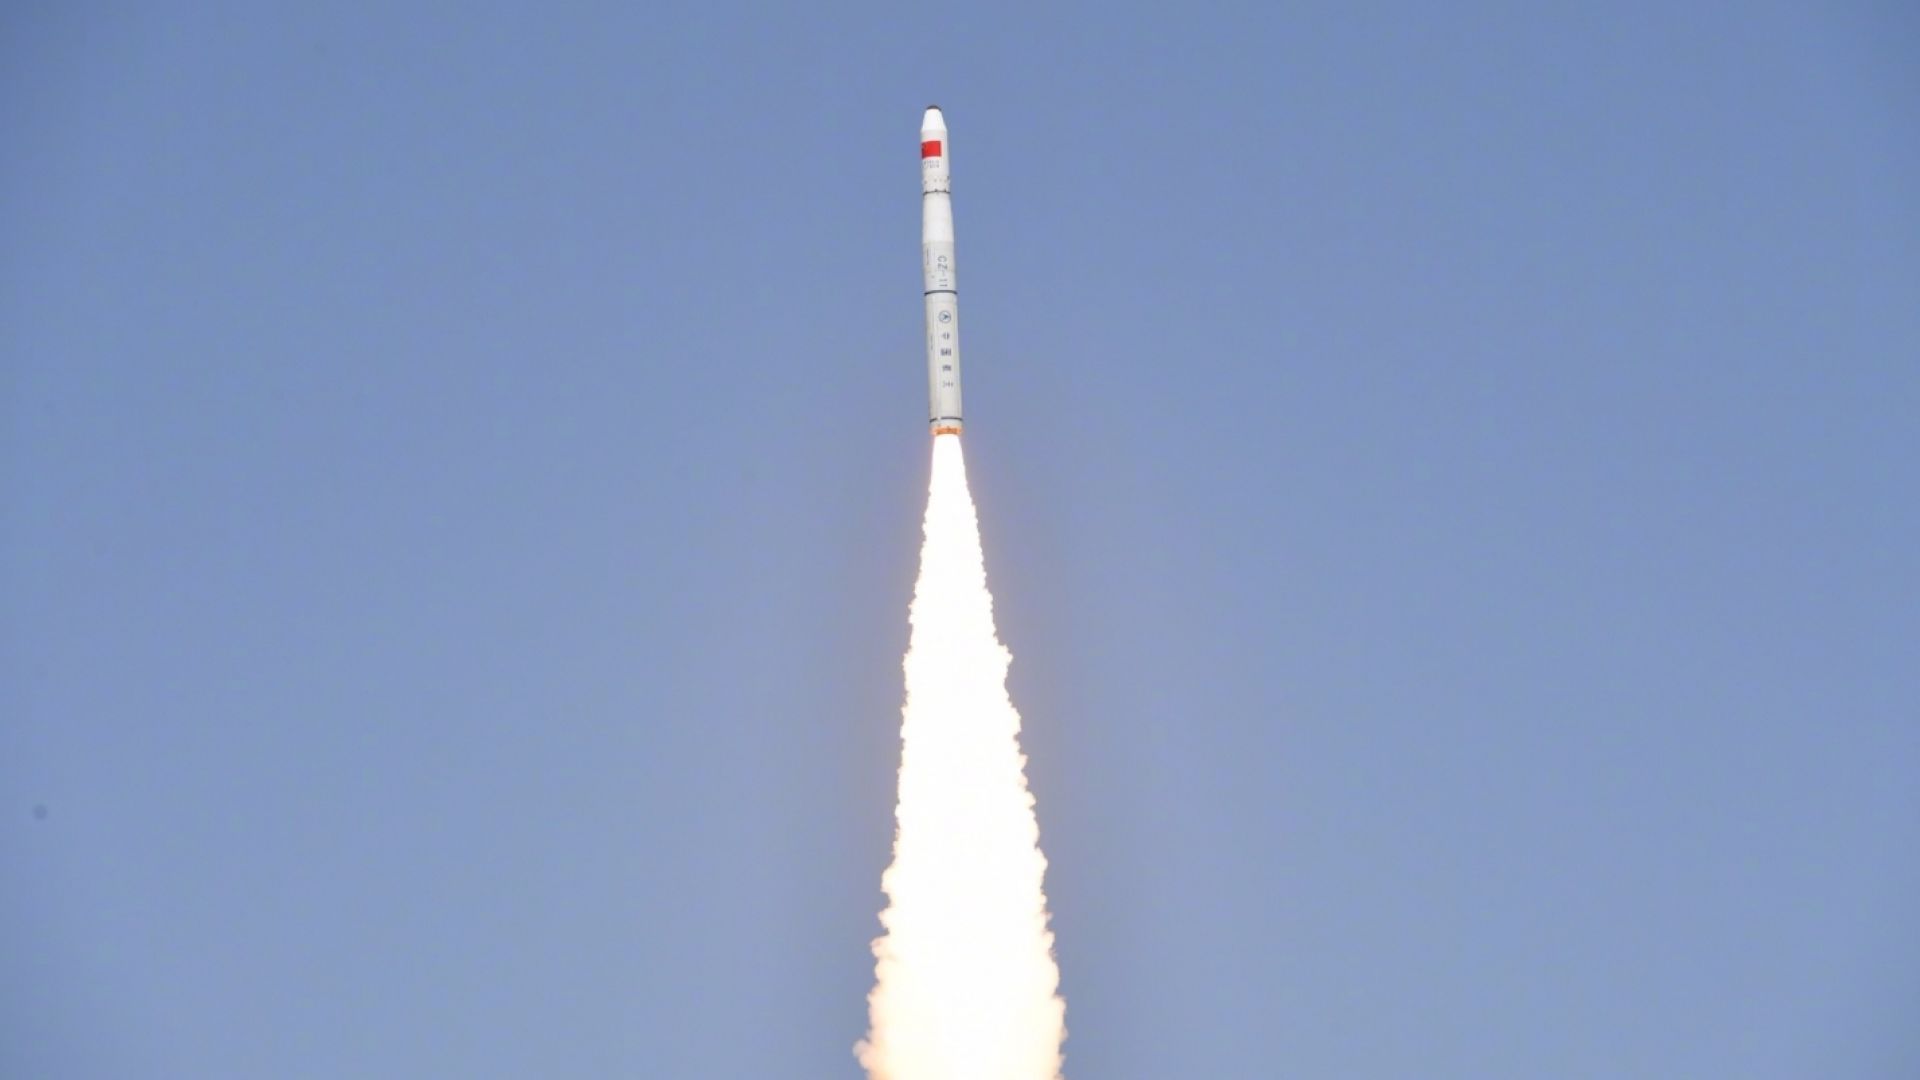 Китай изстреля ракета от морска платформа